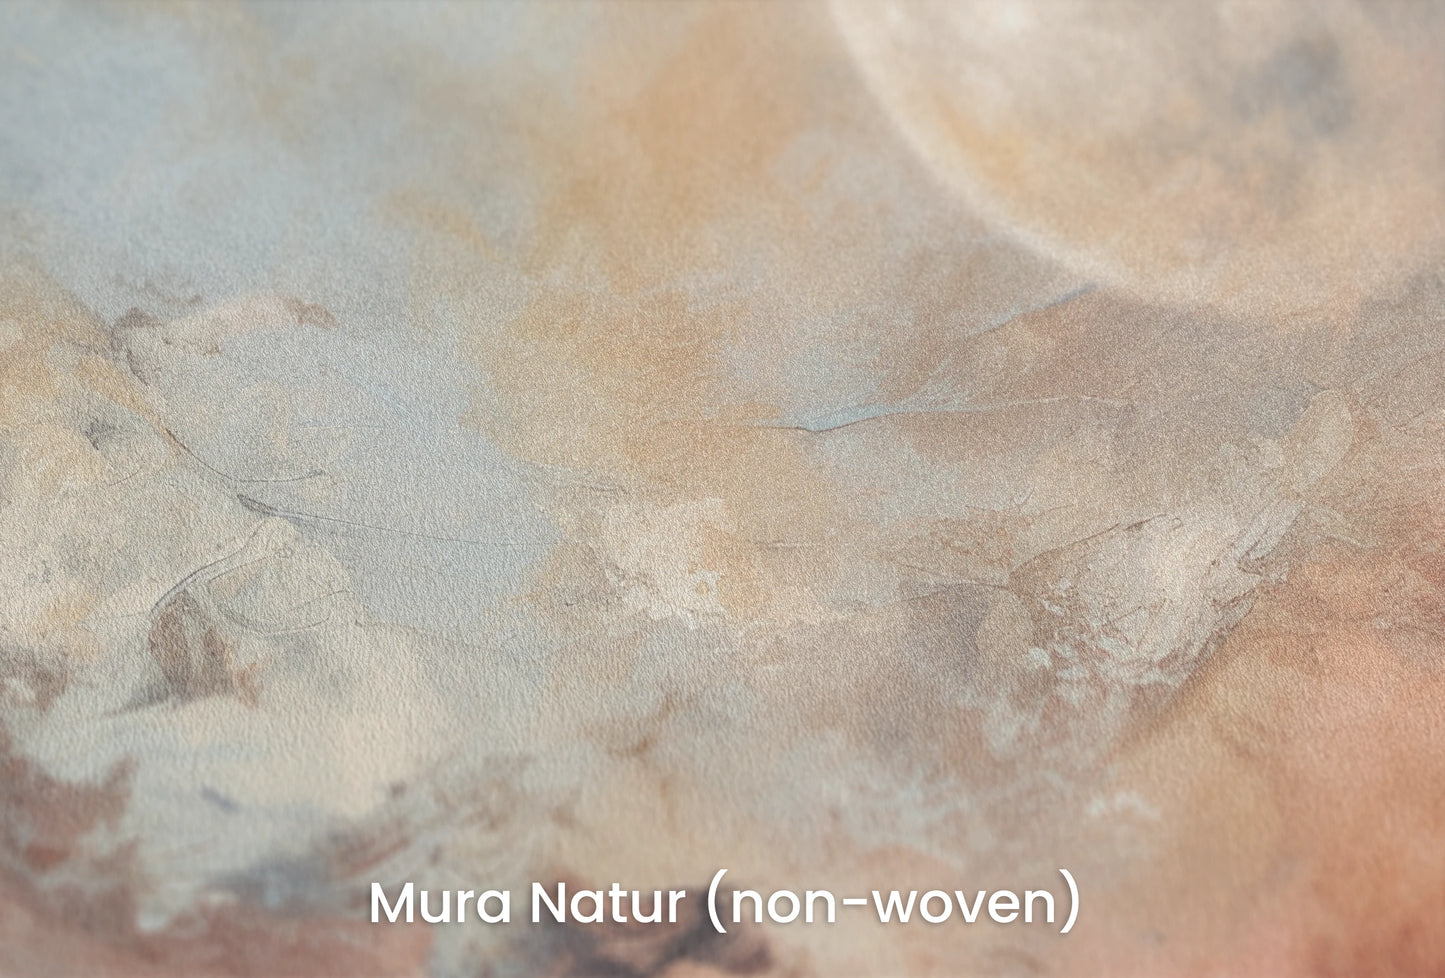 Zbliżenie na artystyczną fototapetę o nazwie Moon's Monochrome na podłożu Mura Natur (non-woven) - naturalne i ekologiczne podłoże.